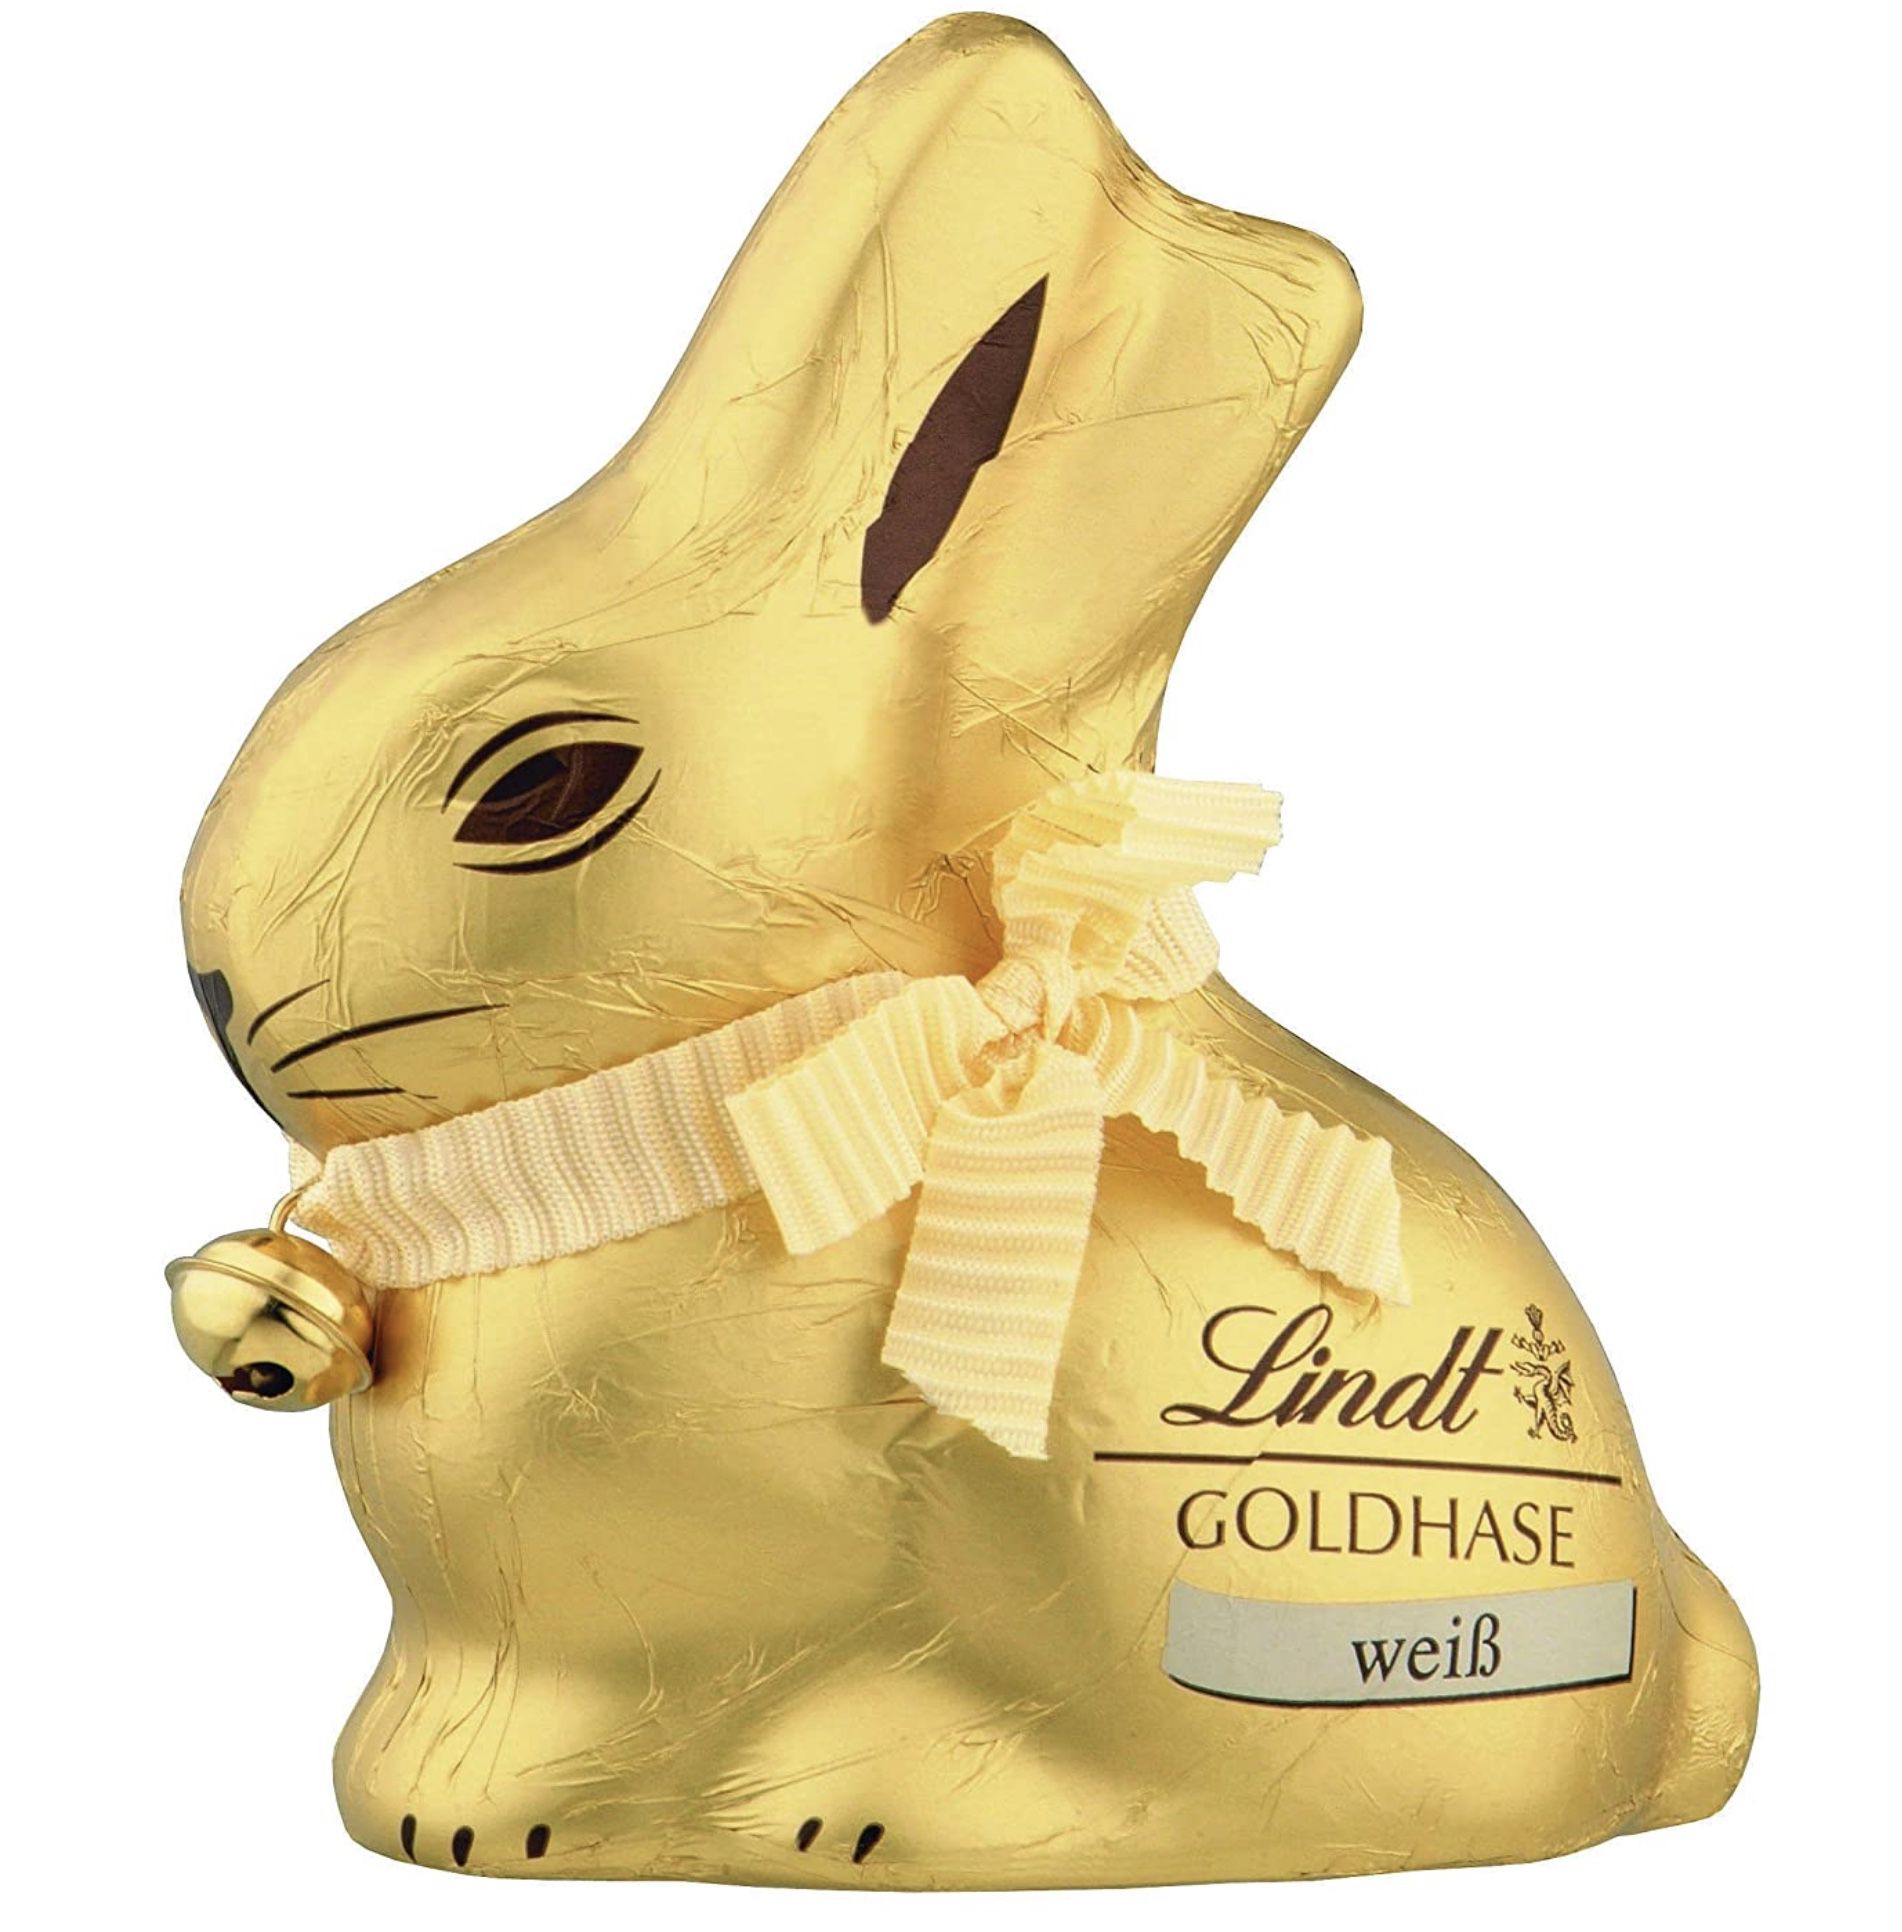 4x Lindt Goldhase Premium Weiße Schokolade je 100g für 11,69€ (statt 14€)